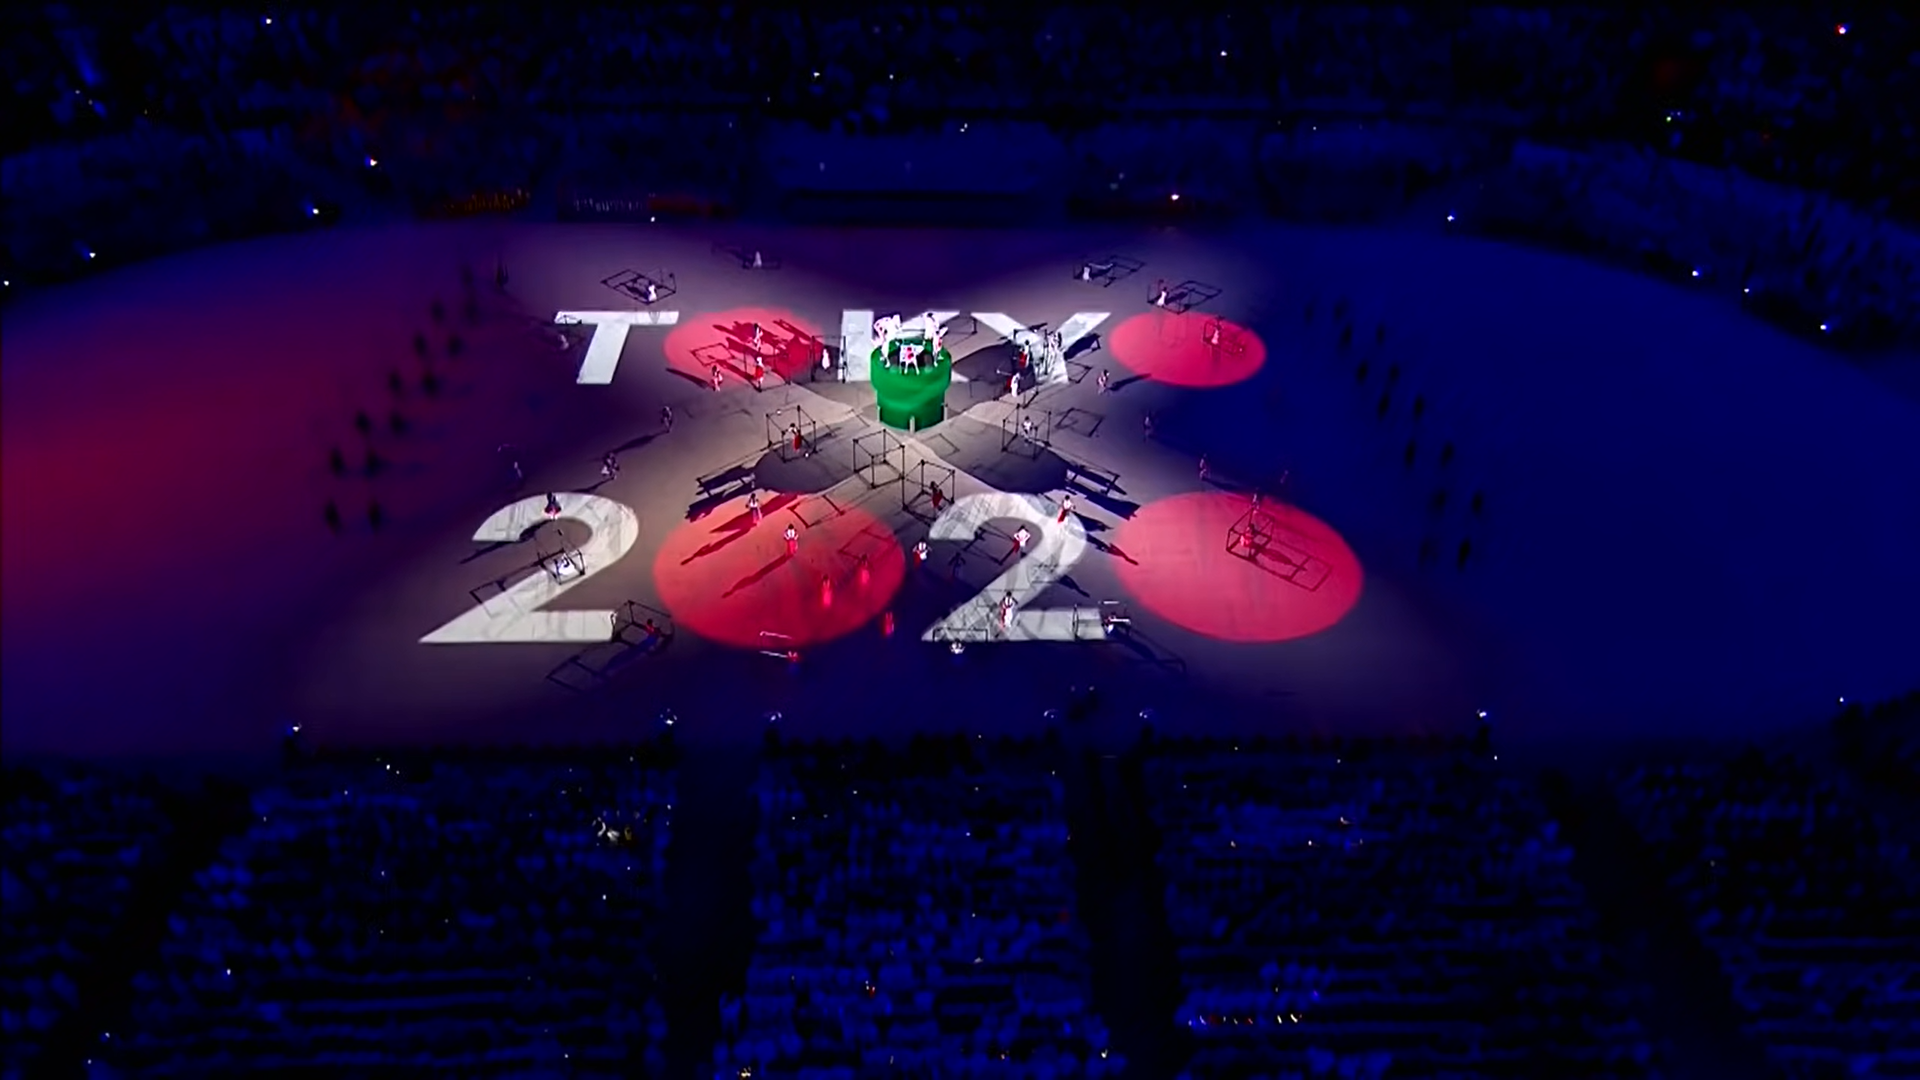 Olimpiada 2020 Ceremonia Otwarcia Jak Bedzie Wygladalo Rozpoczecie Letnich Igrzysk Olimpijskich Radiosupernova Pl